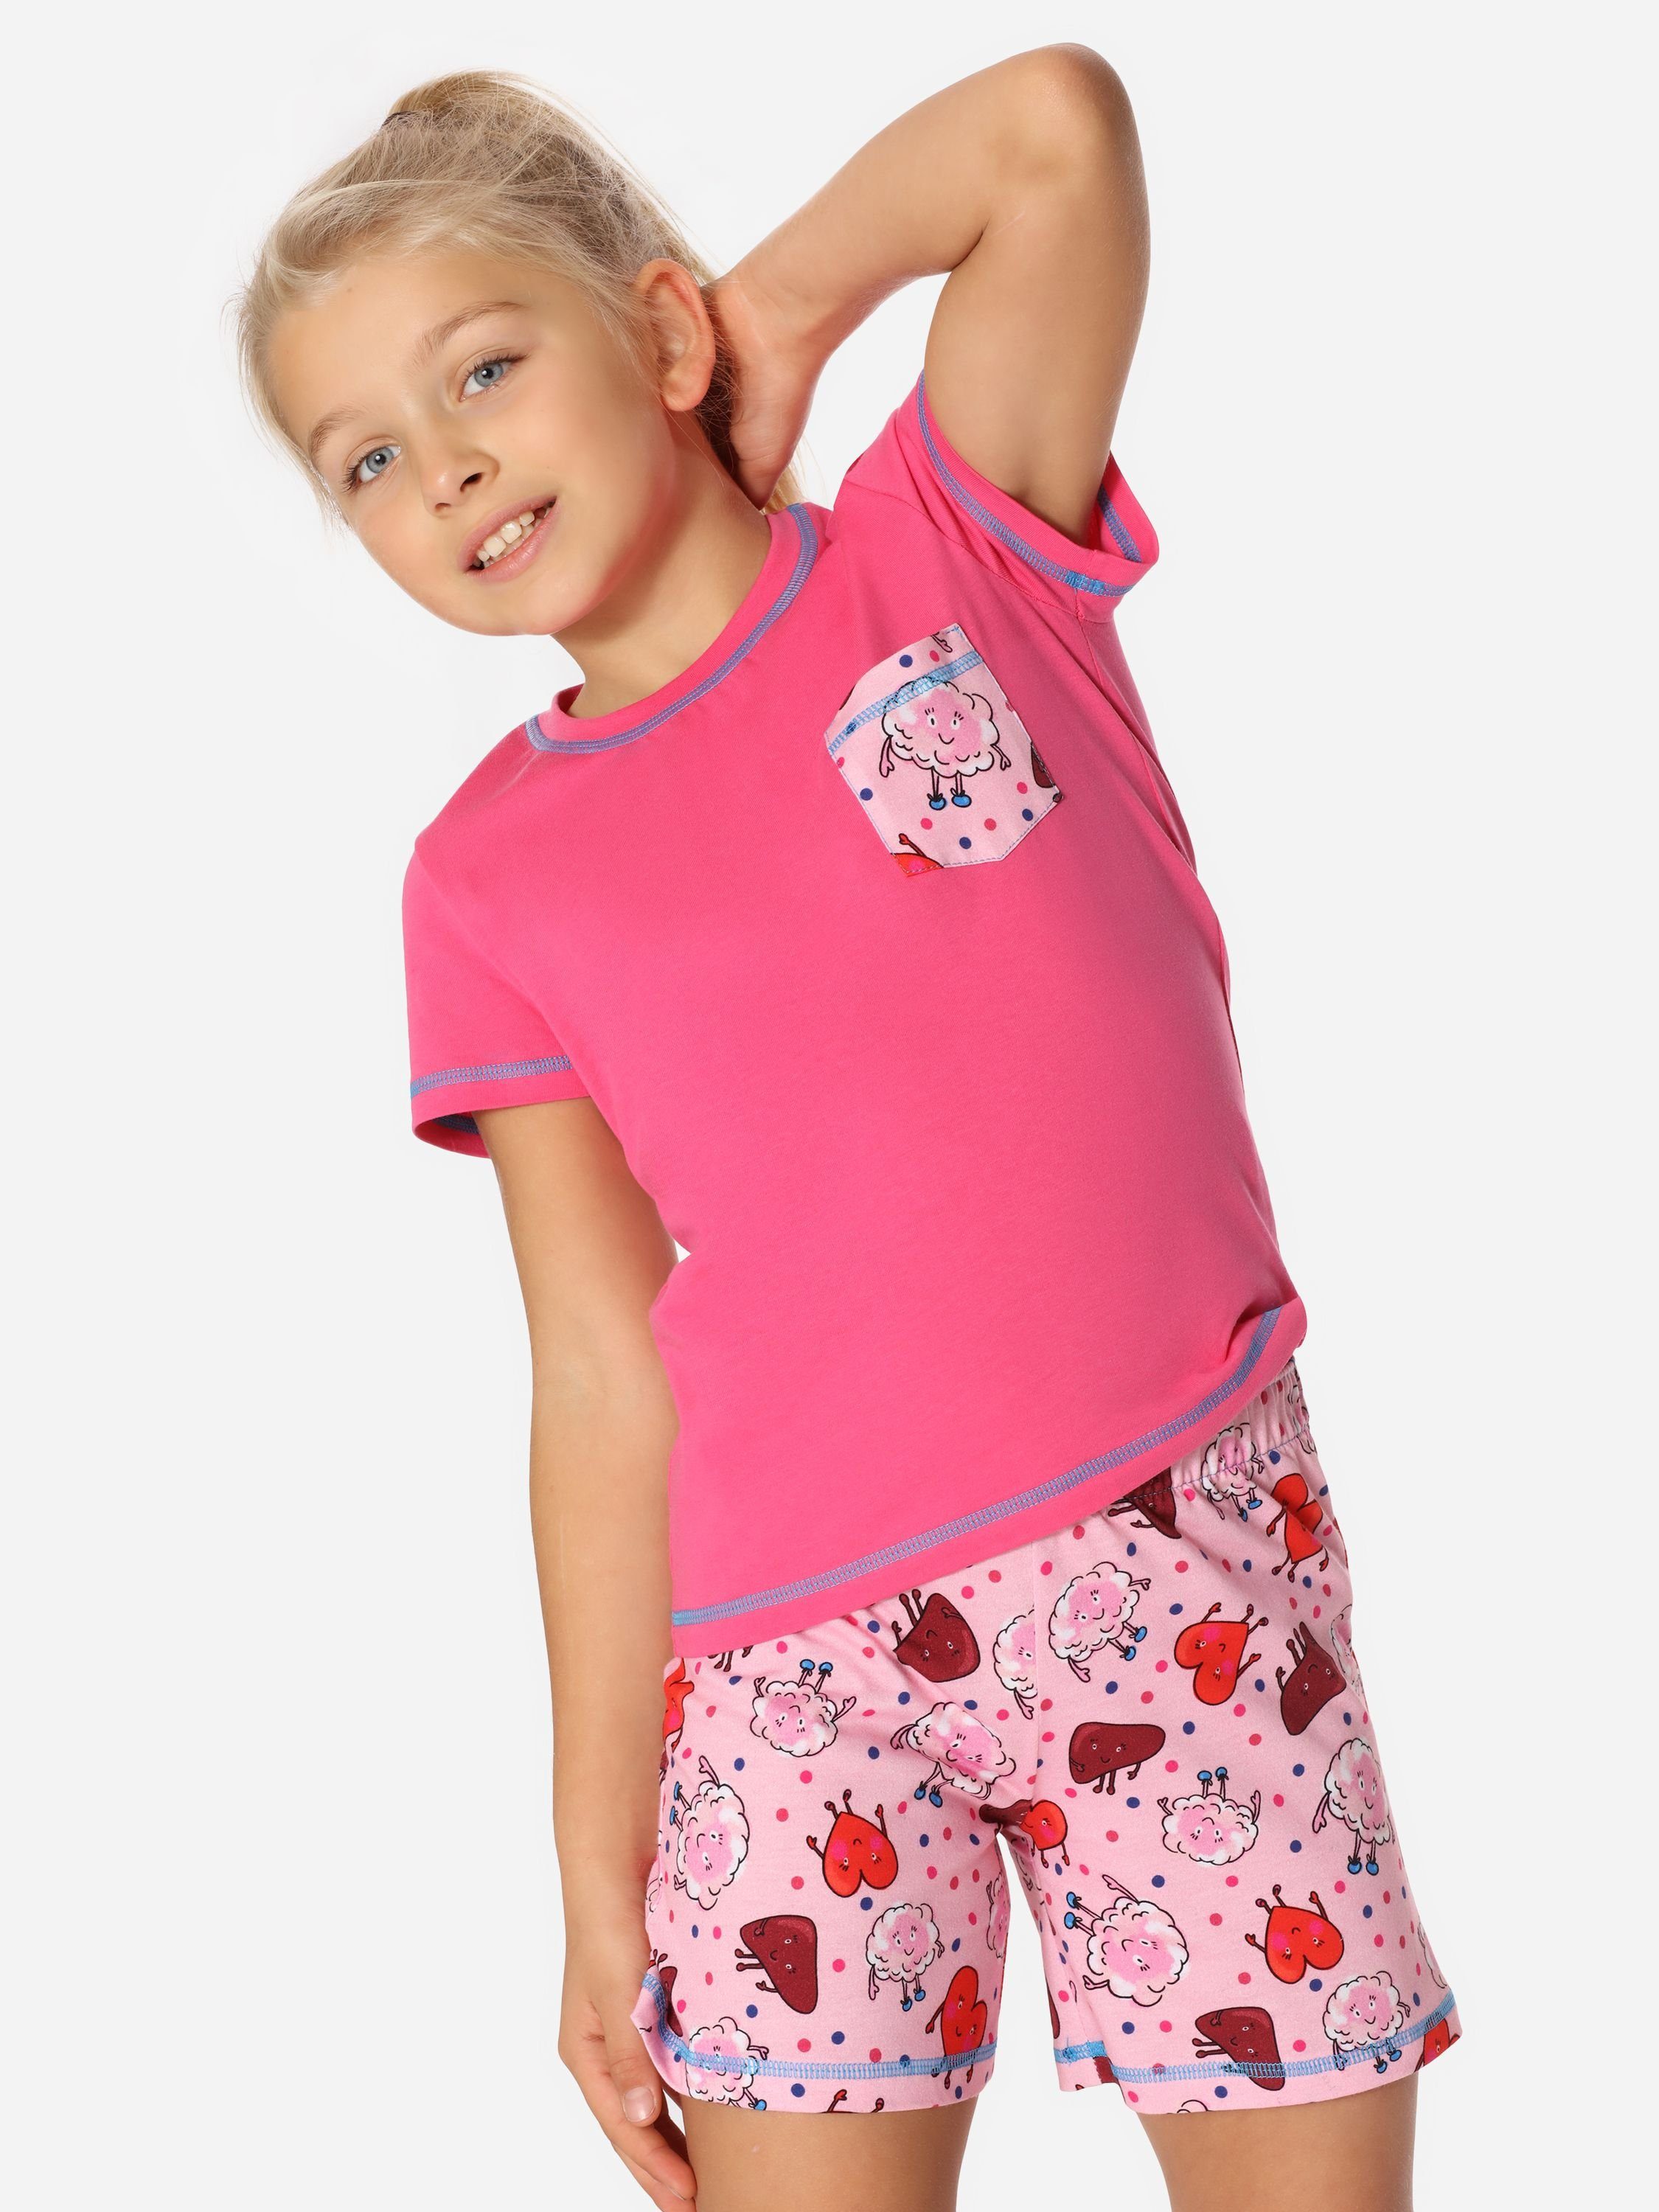 Kurz Rosa/Glücklich/Körper MS10-292 Mädchen Pyjama Set Schlafanzüge Merry aus Baumwolle Schlafanzug Style